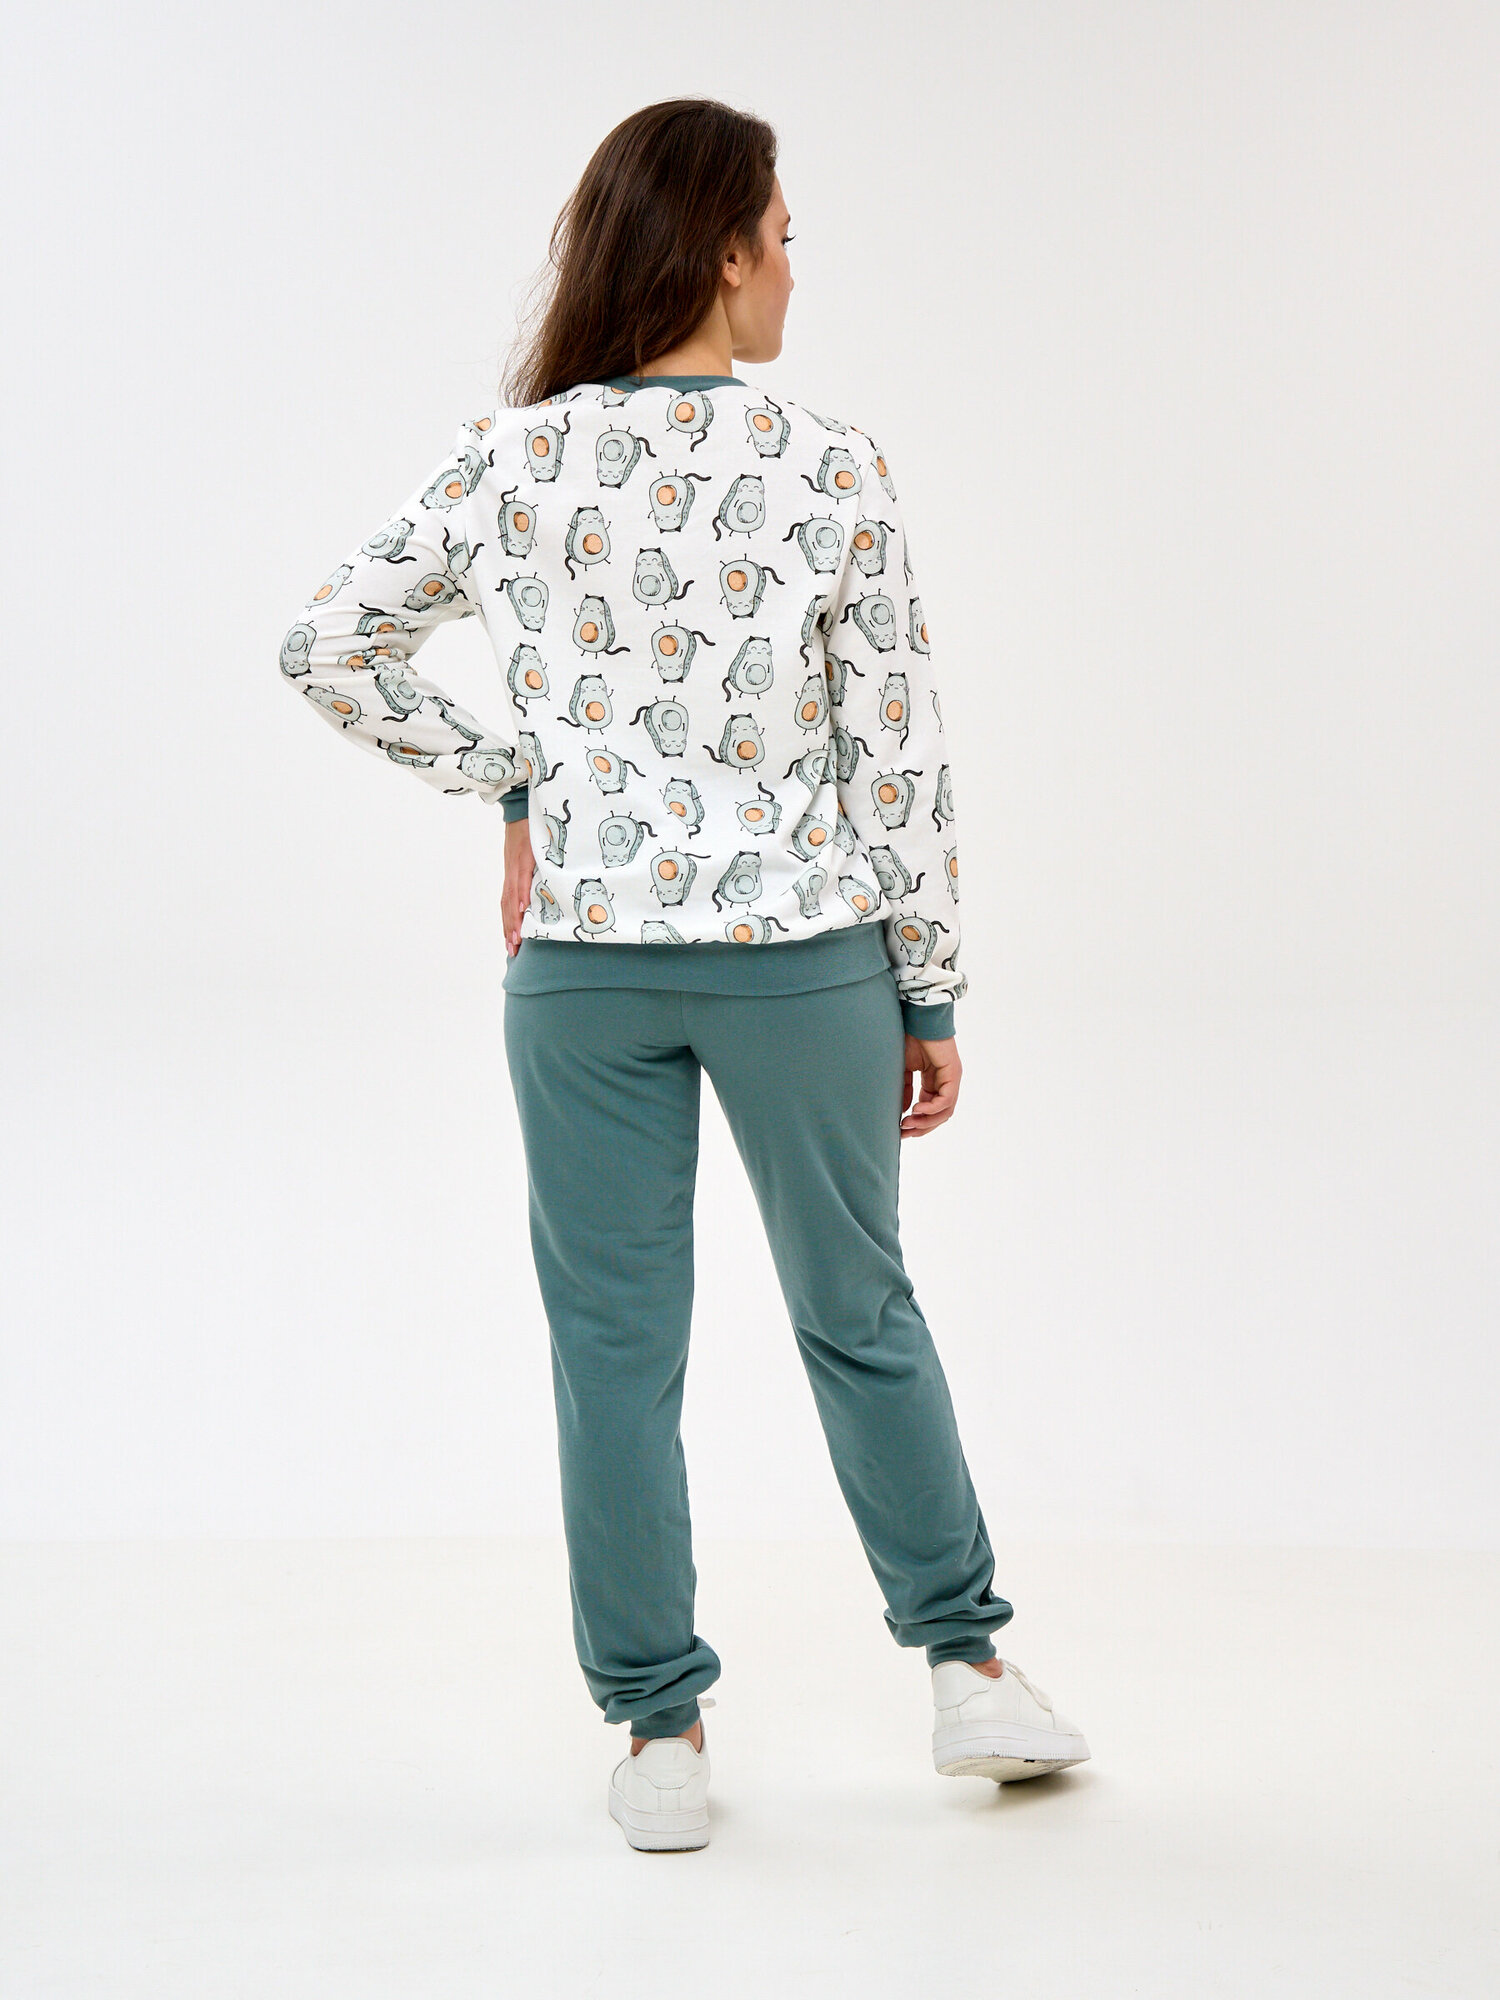 Пижама Монотекс, размер 52, белый, зеленый - фотография № 7